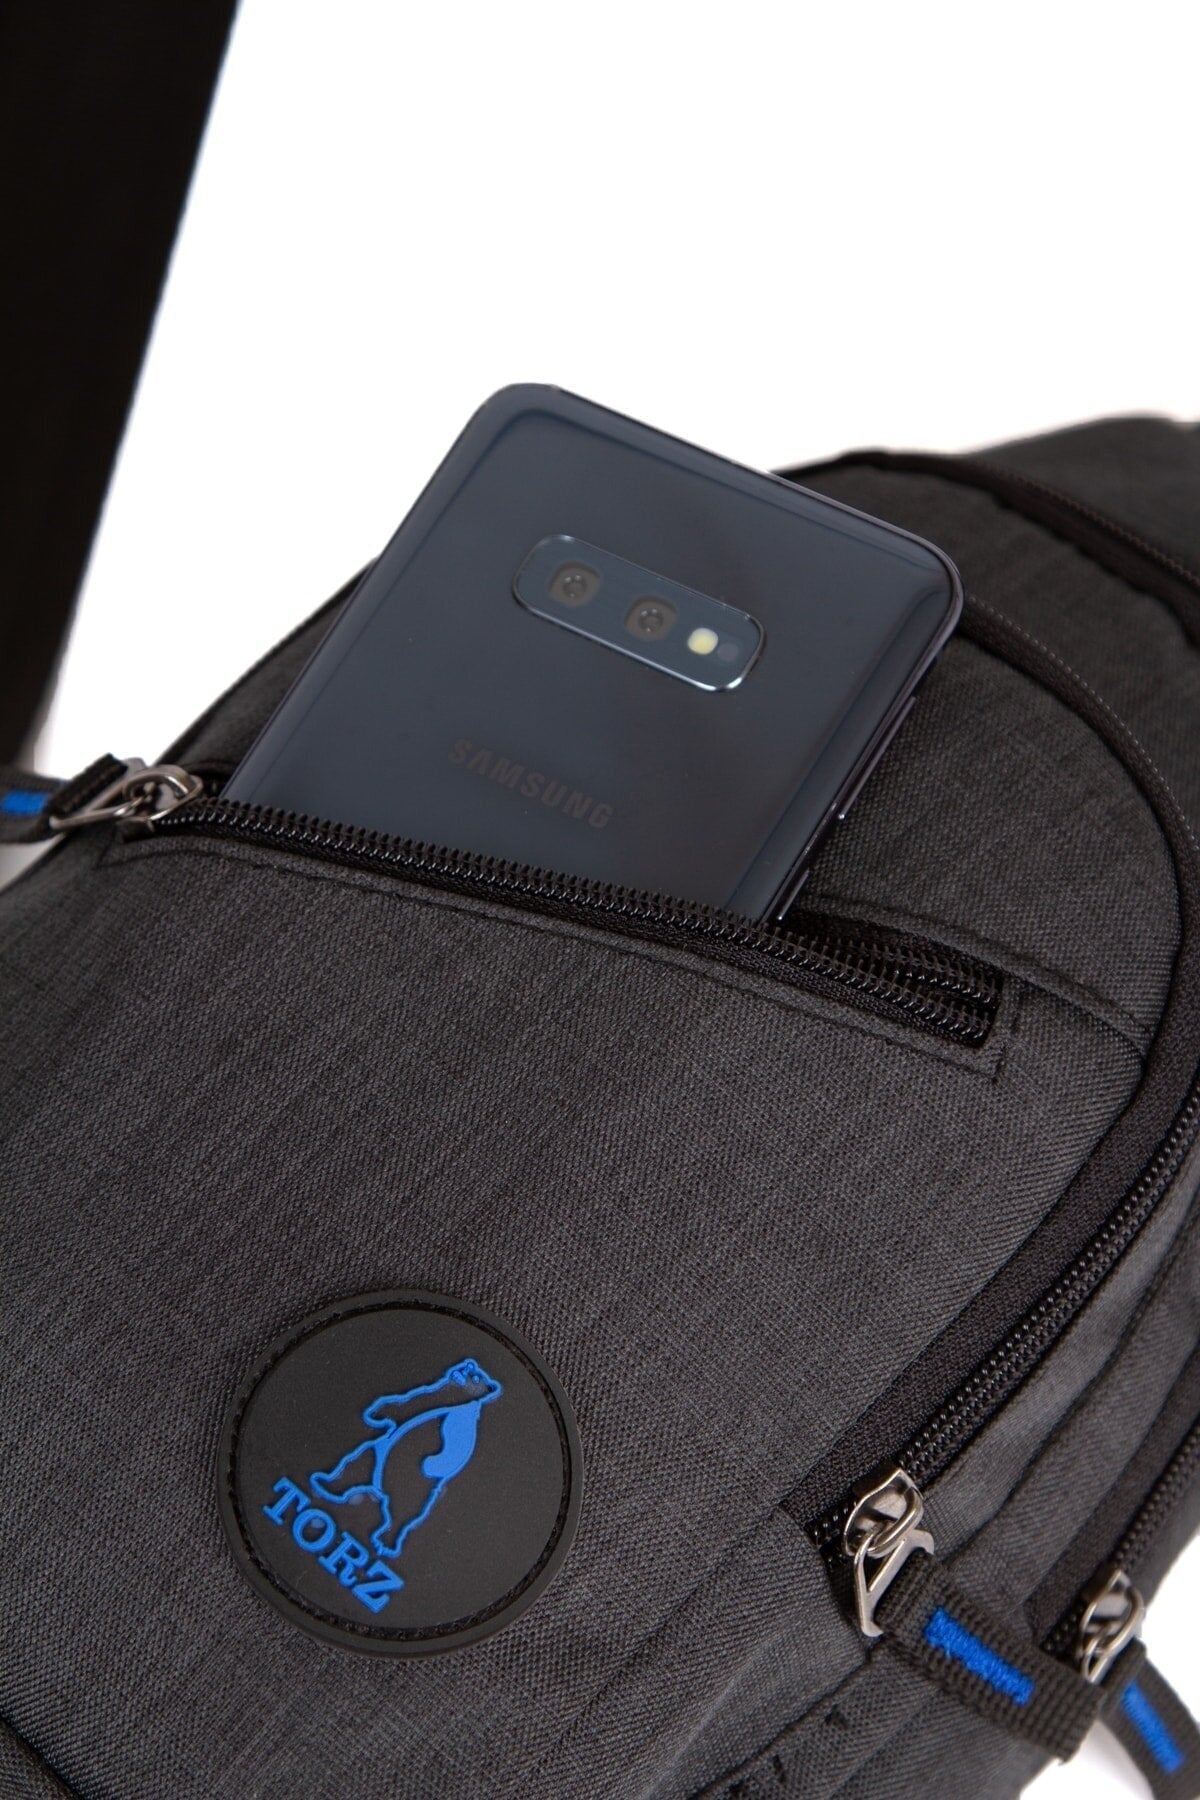 Black Shoulder And Arm Bag Daily Mini Backpack Shoulder Messenger Bag With Headphone Output